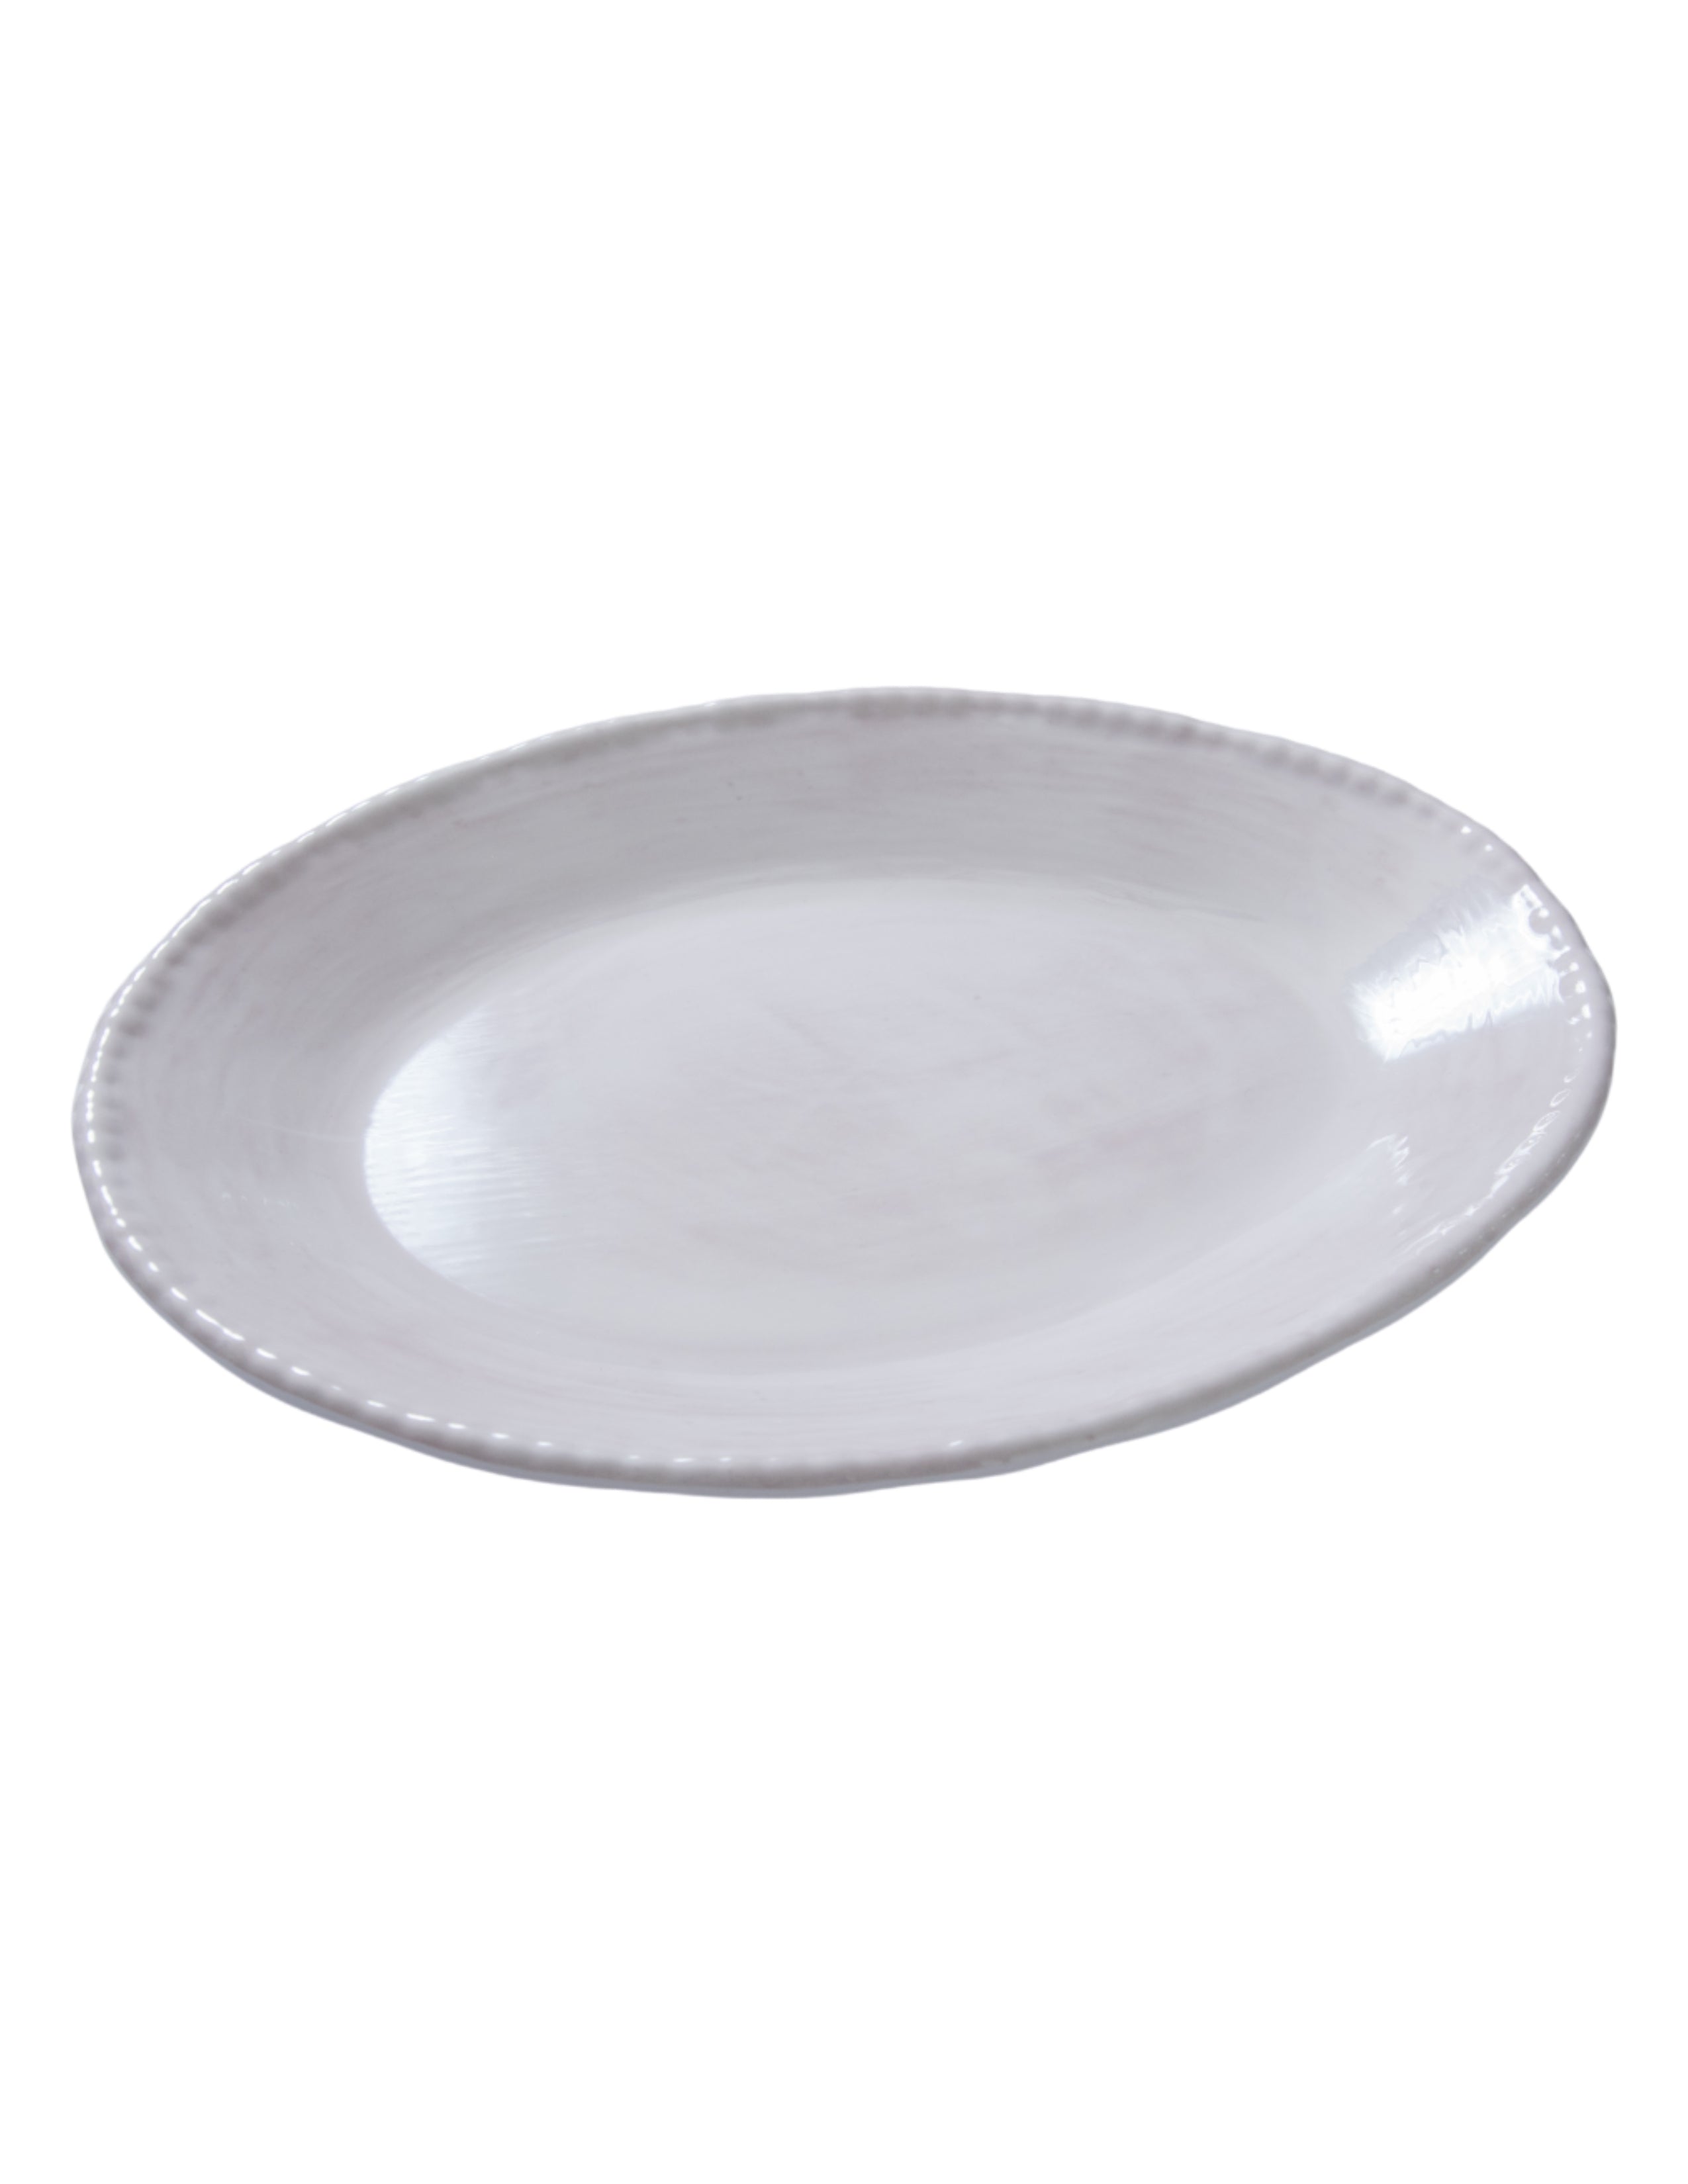 Beaded Oval Serving Platter - Pottery White